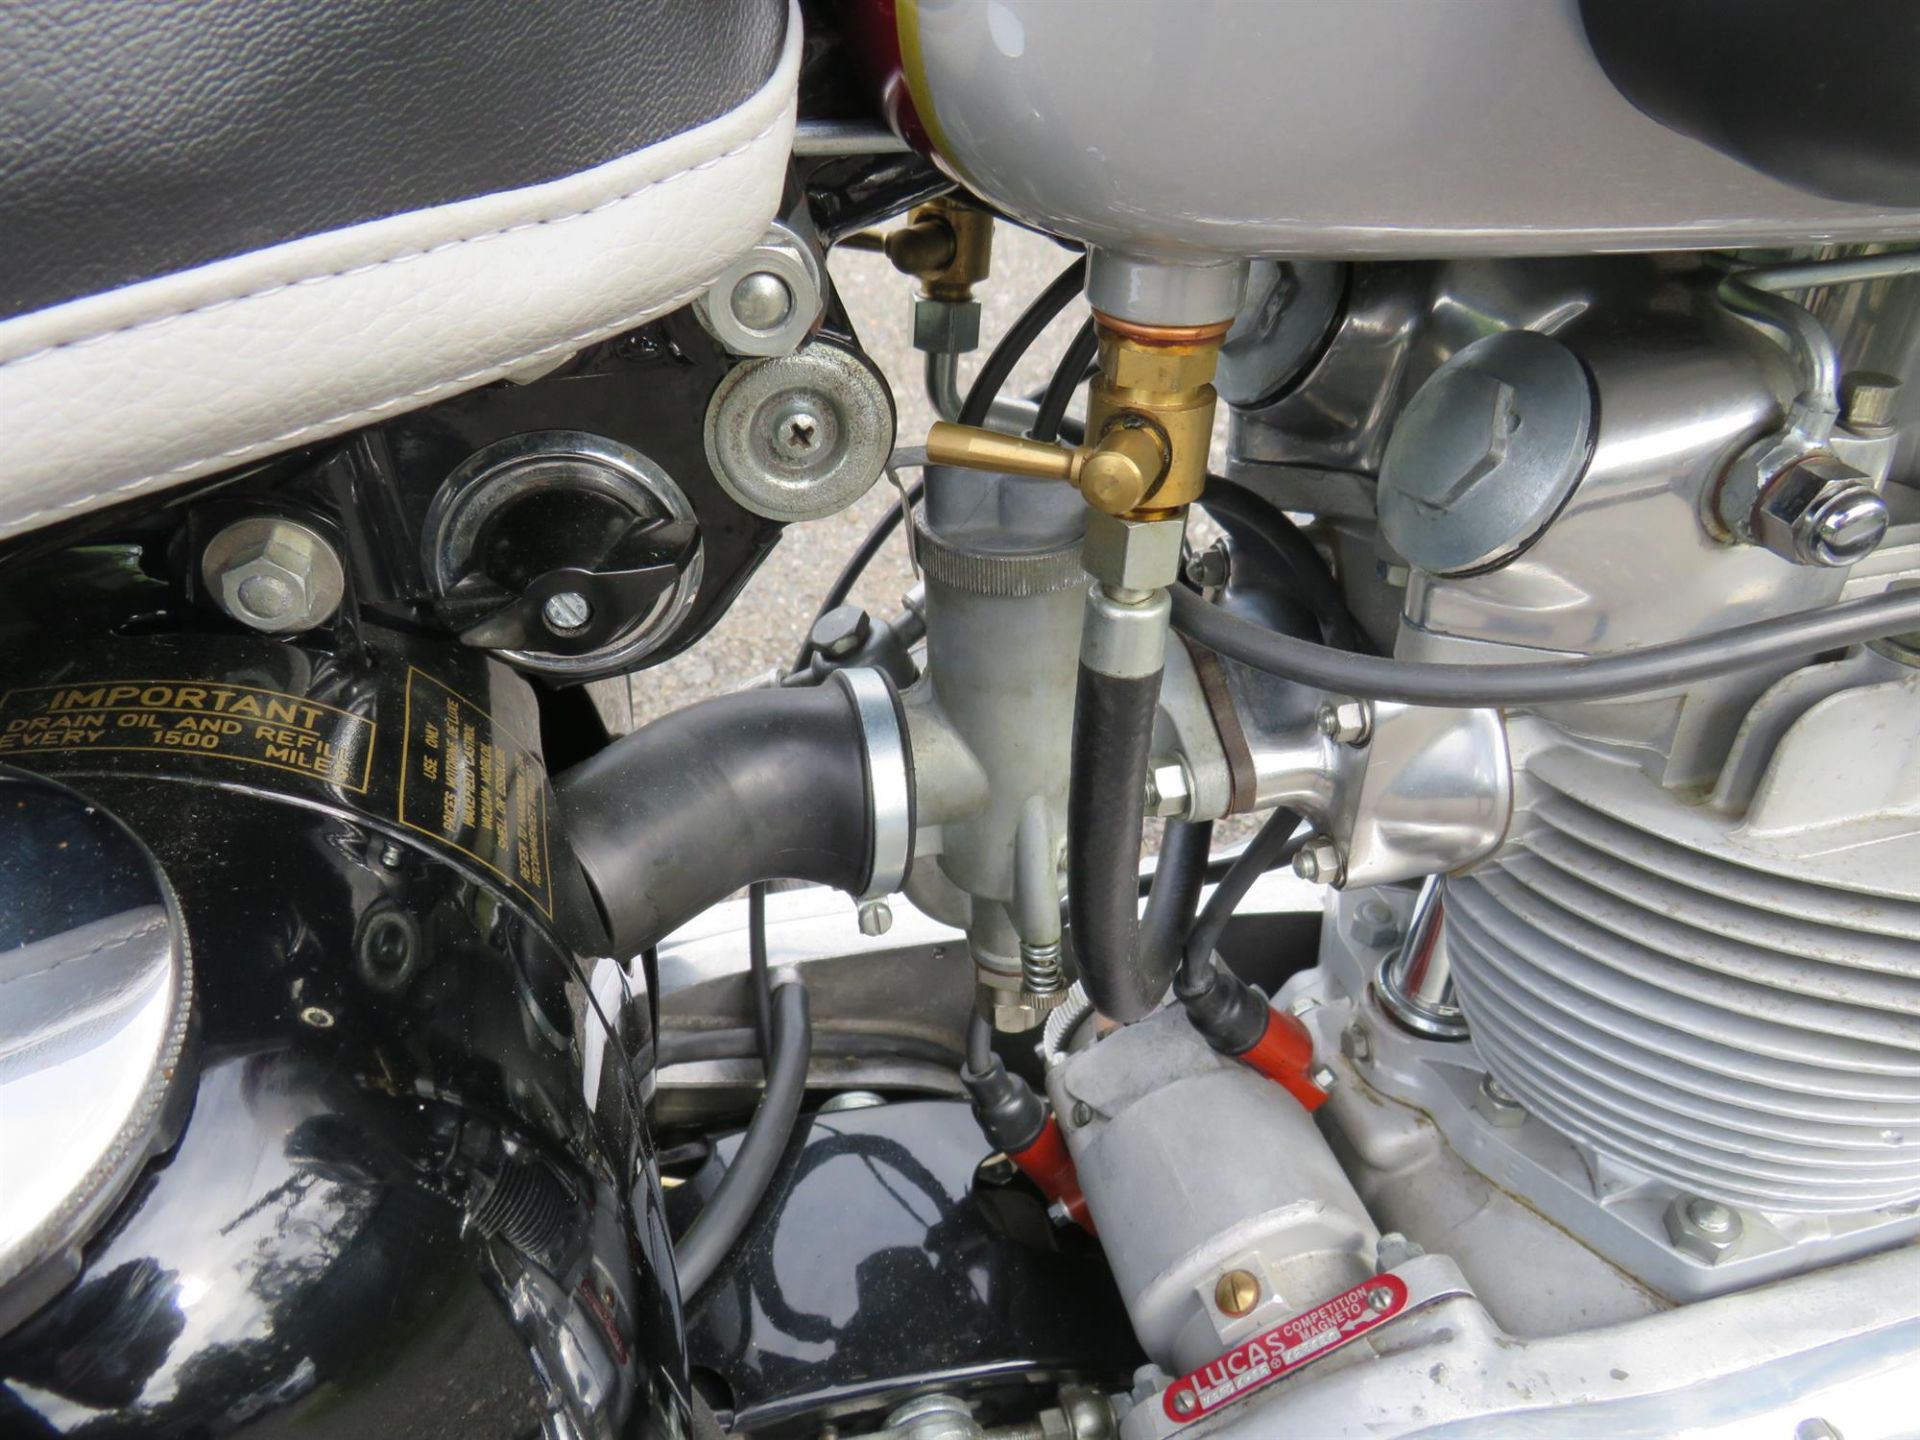 1962 Triumph TR6SS Trophy 649cc - Image 8 of 10